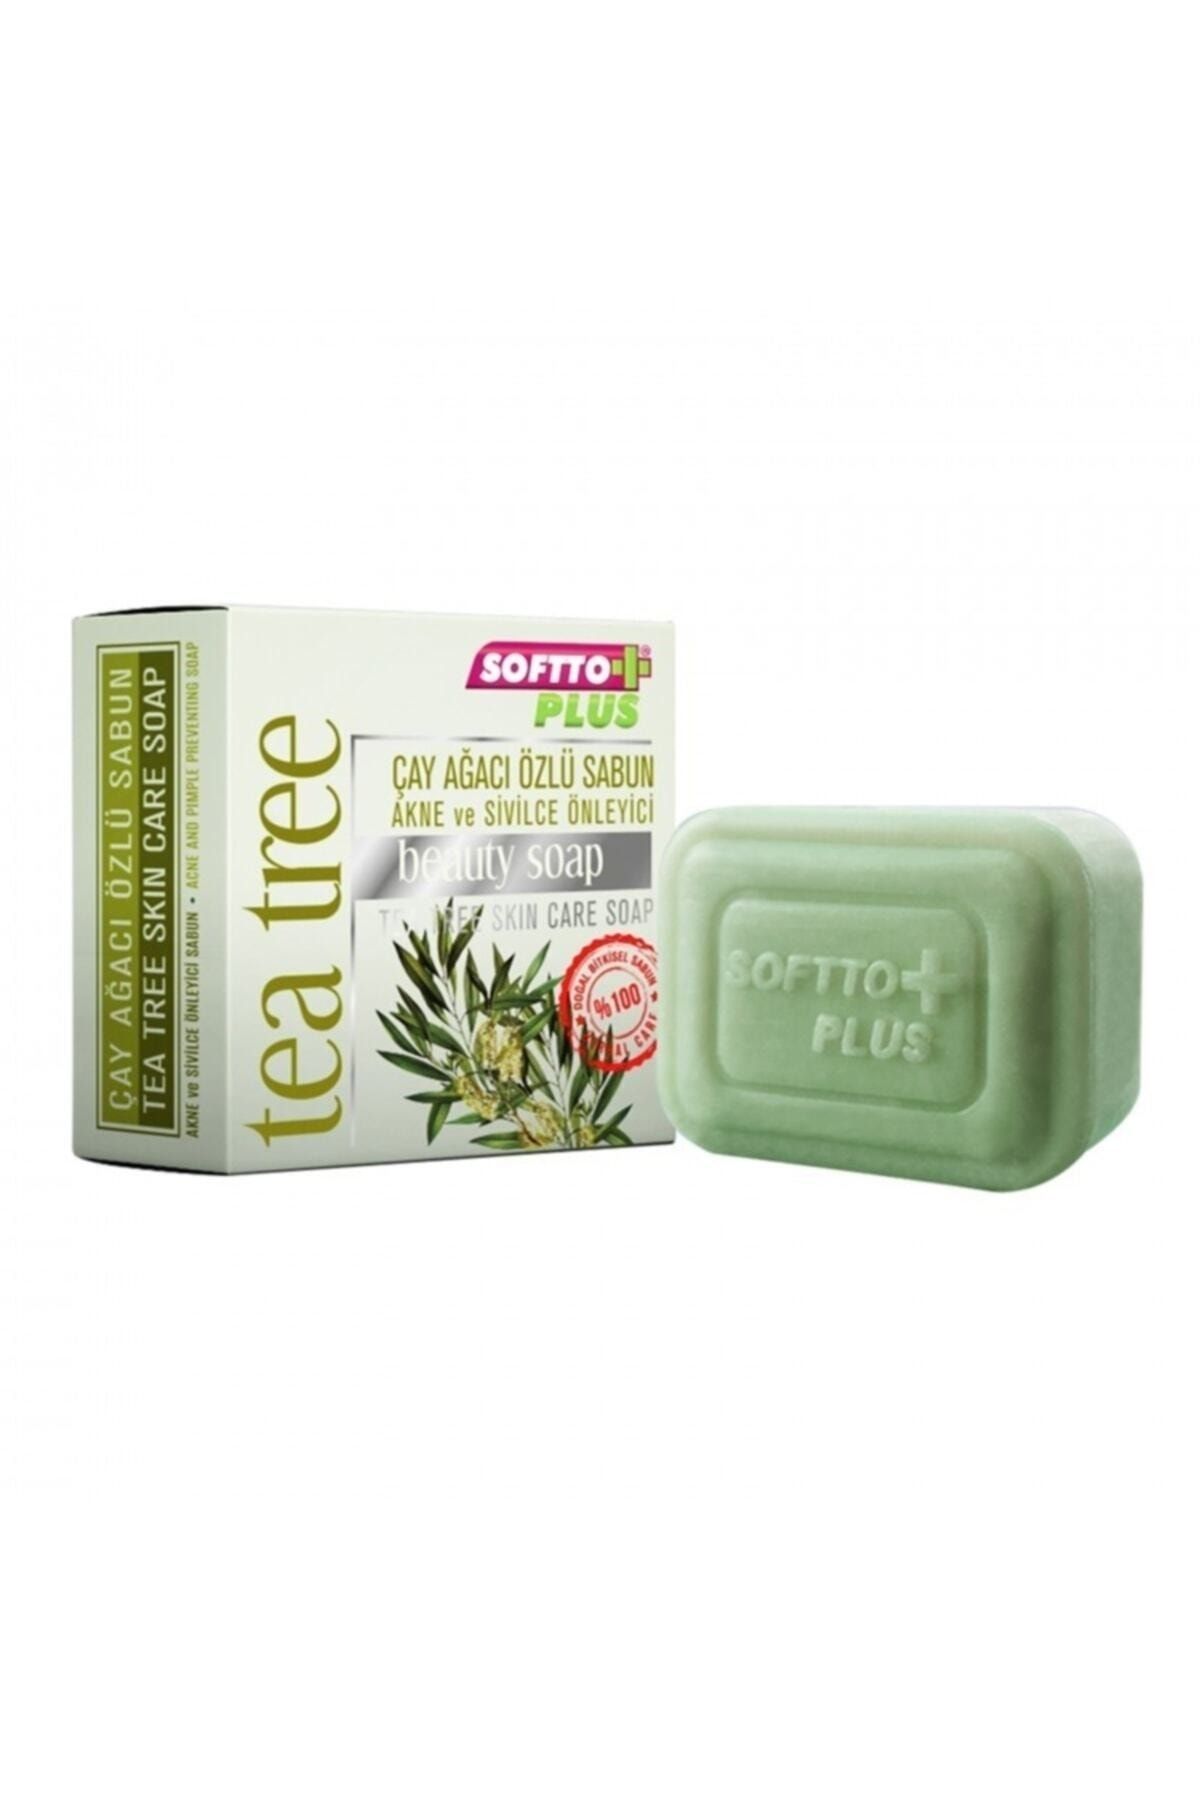 Softto Plus Çay Ağacı Özlü Sabun